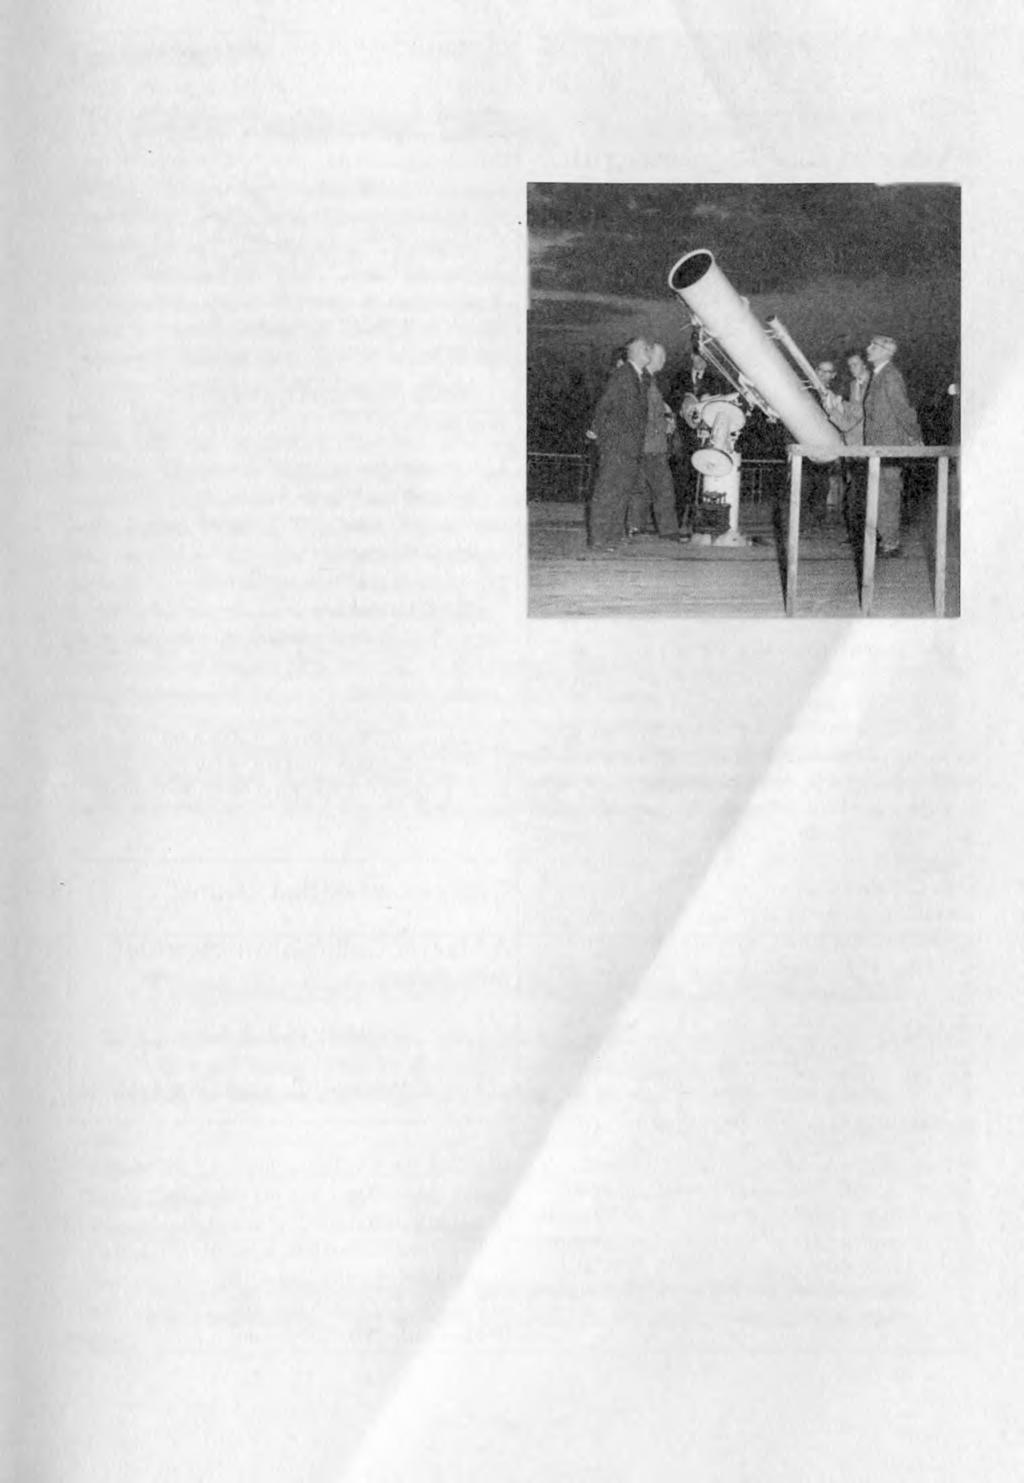 Egy év - egy kép Győr bemutató csillagvizsgálója (1959) Ahhoz, hogy egy településen pezsgő amatőr élet jöjjön létre, elengedhetetlenül szükséges egy hajtómotor".